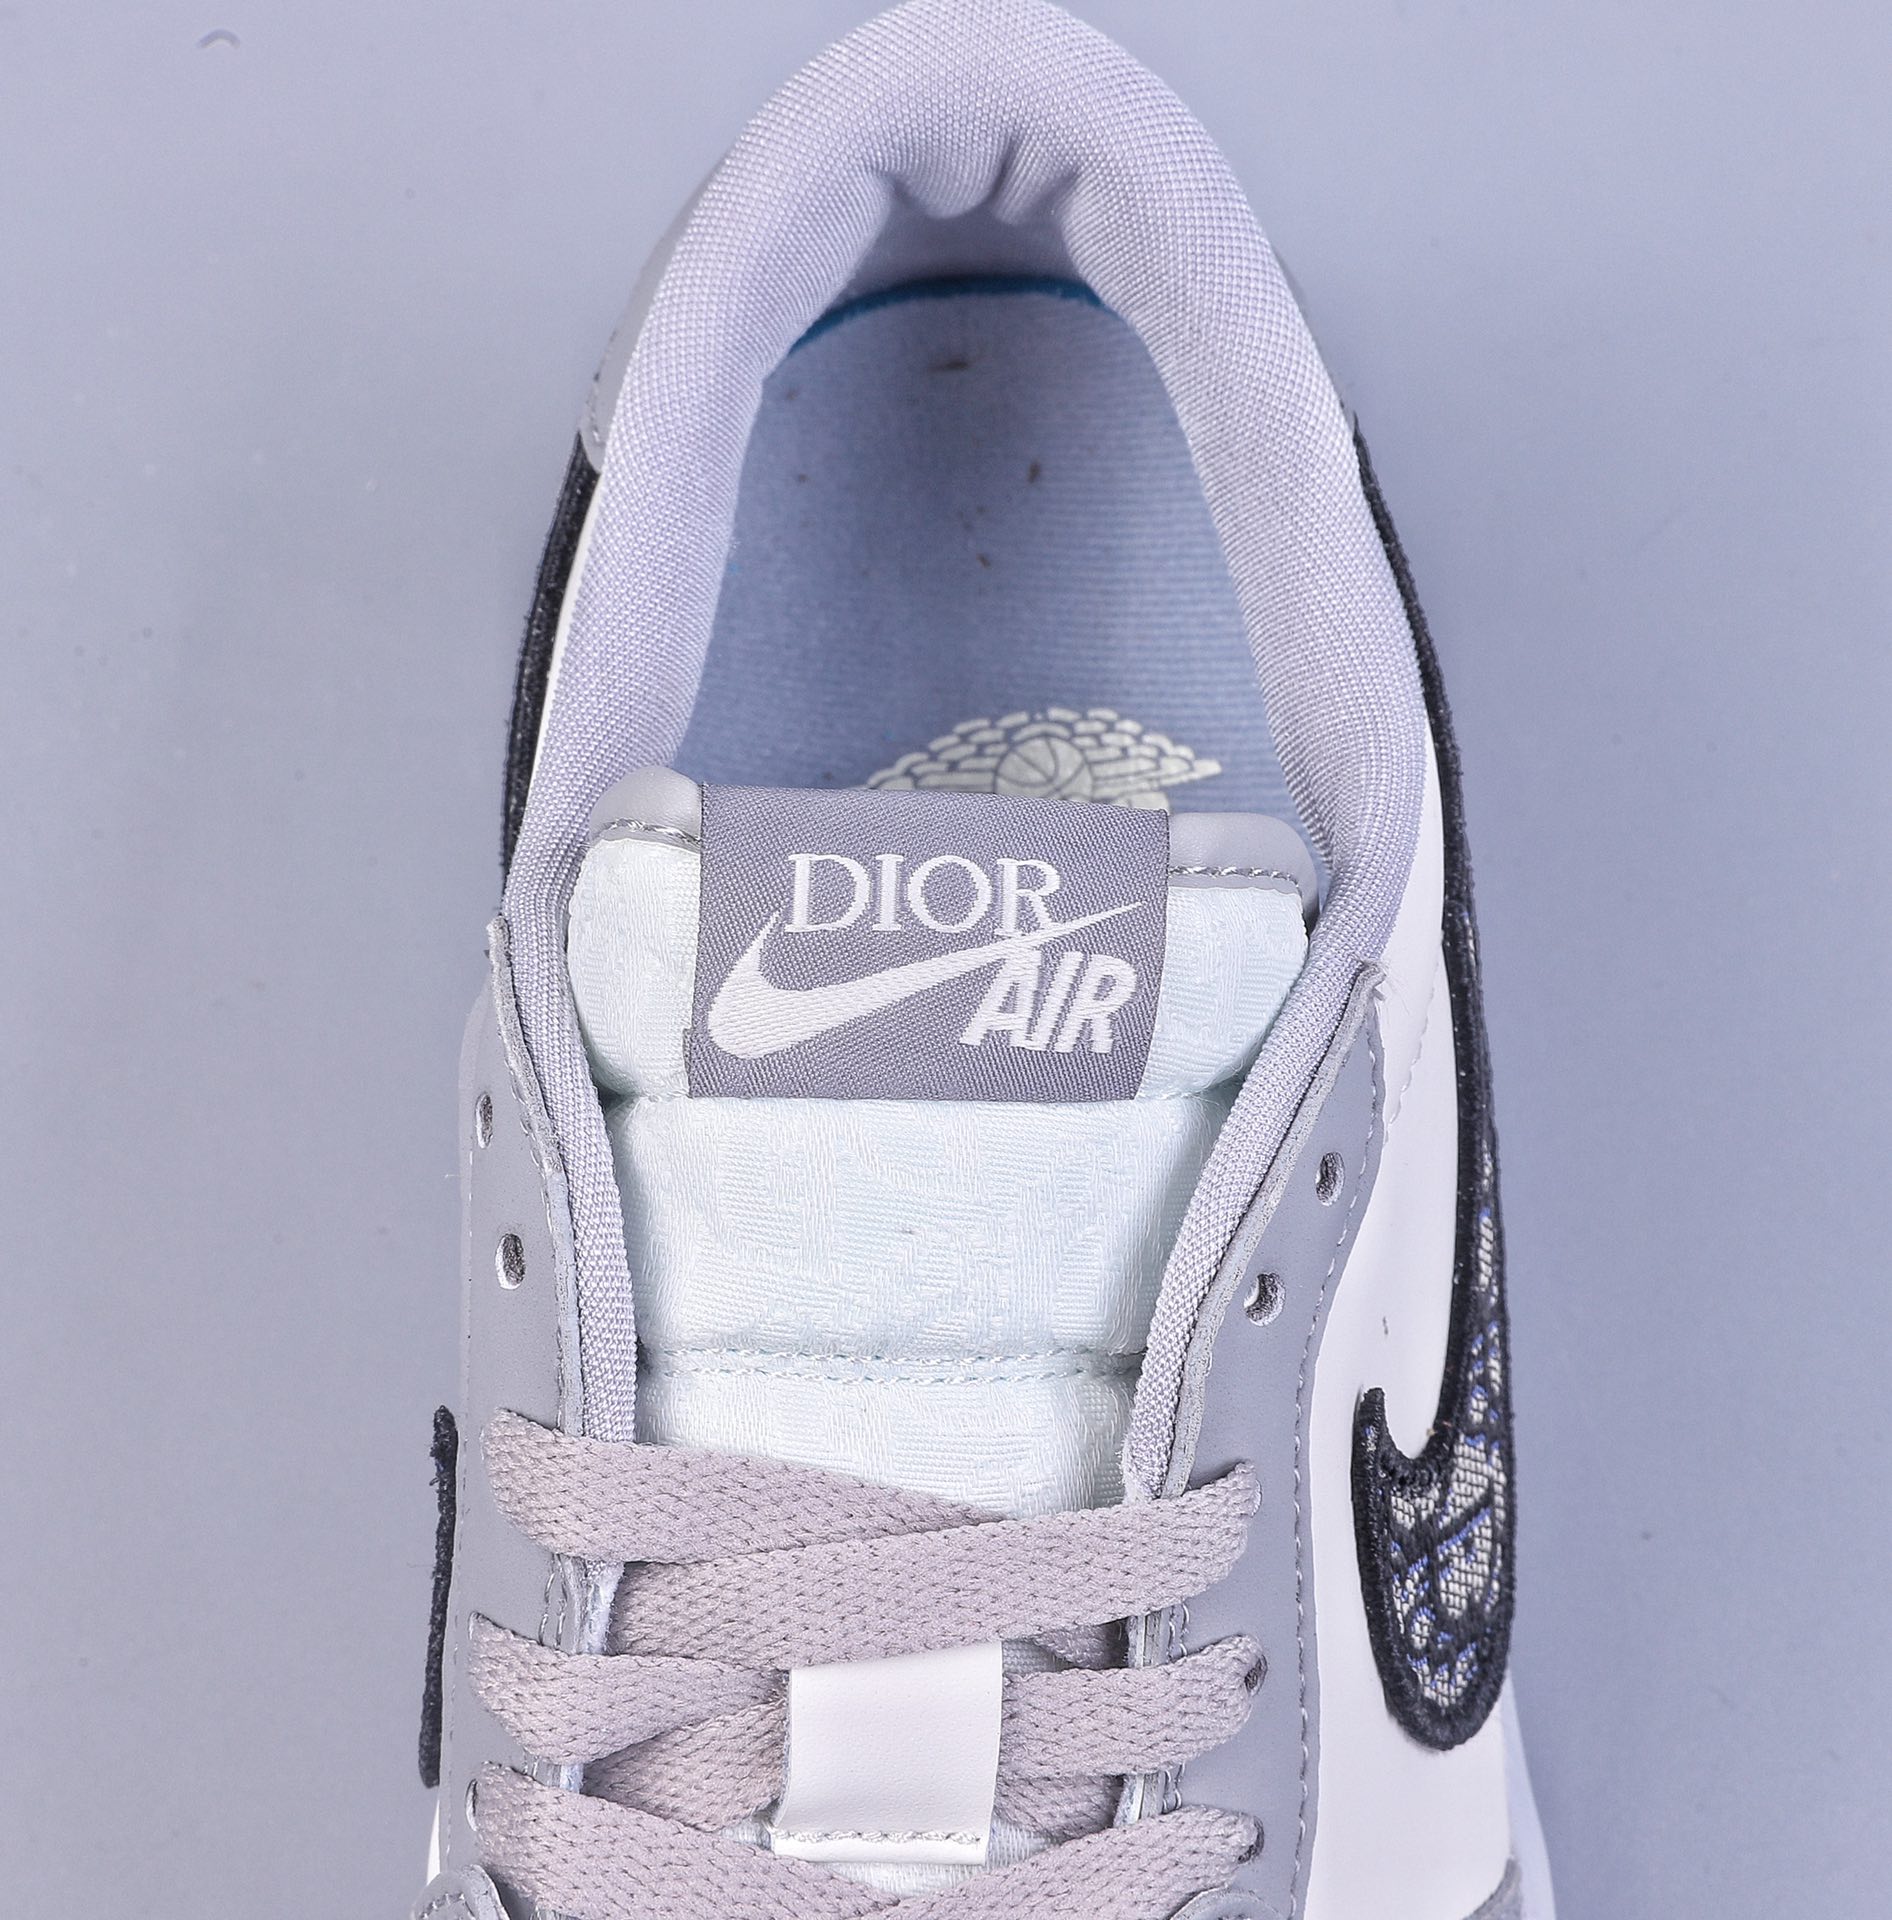 Dior X Air Jordan AJ1 LOW Dior United Name White and Low CN8608-002